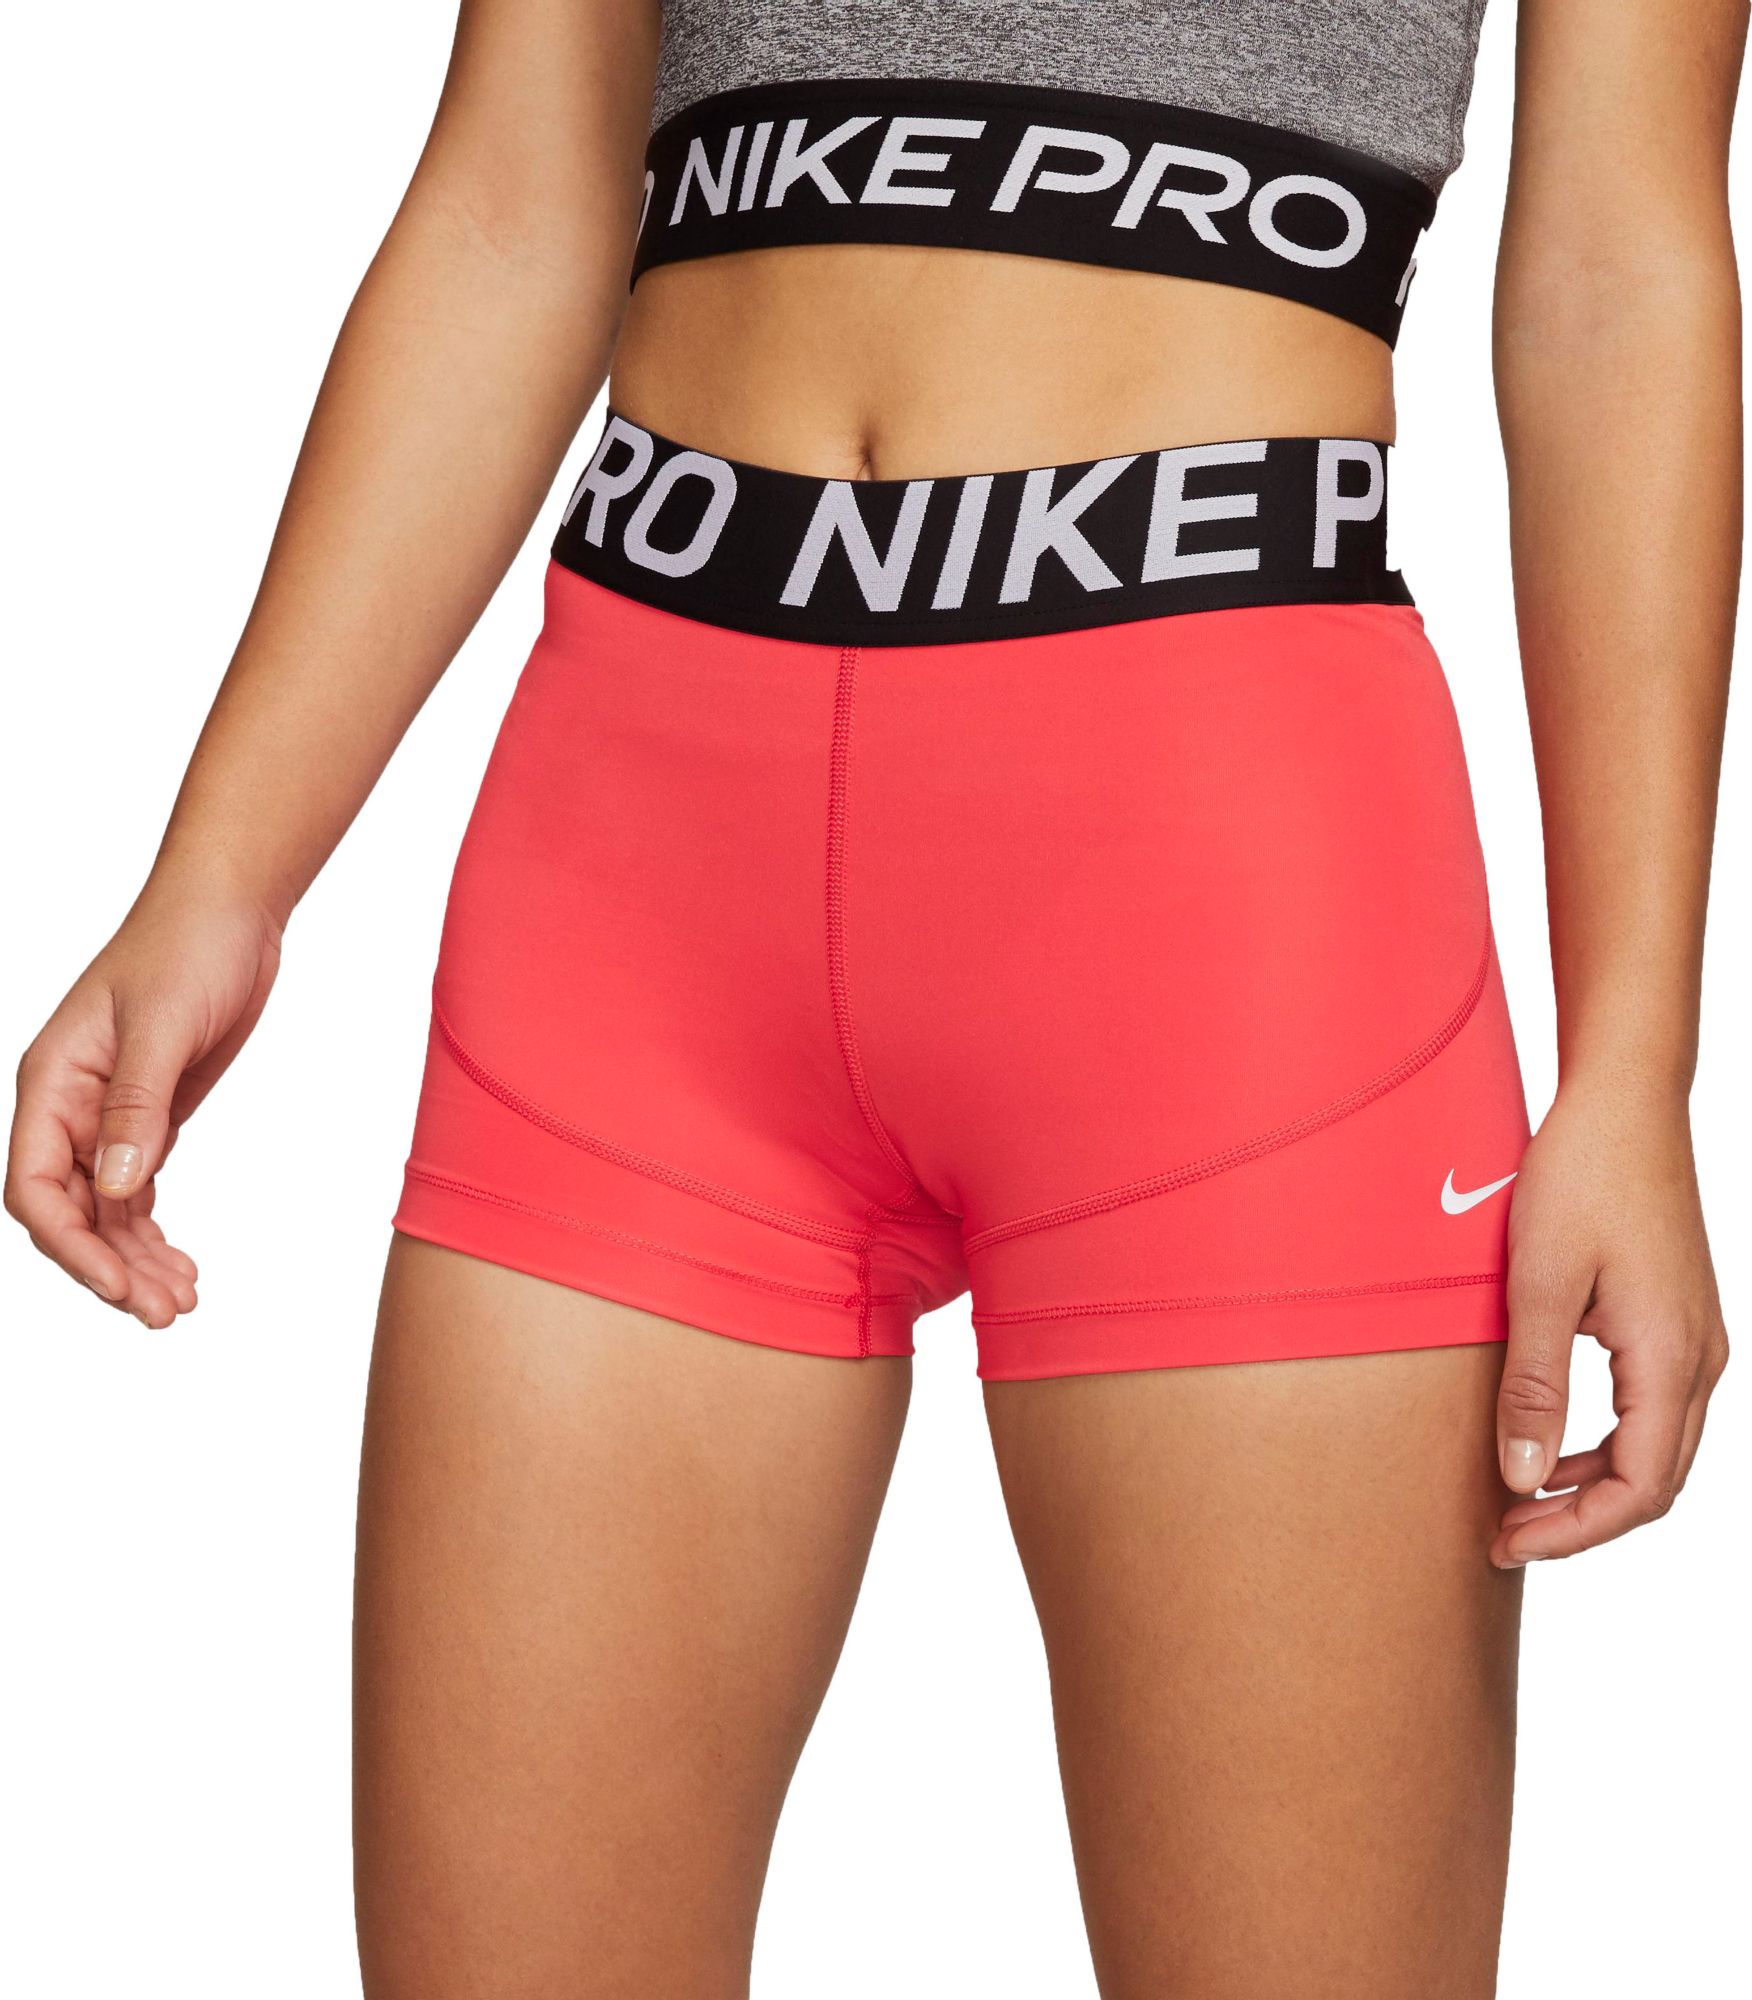 nike pro shorts female